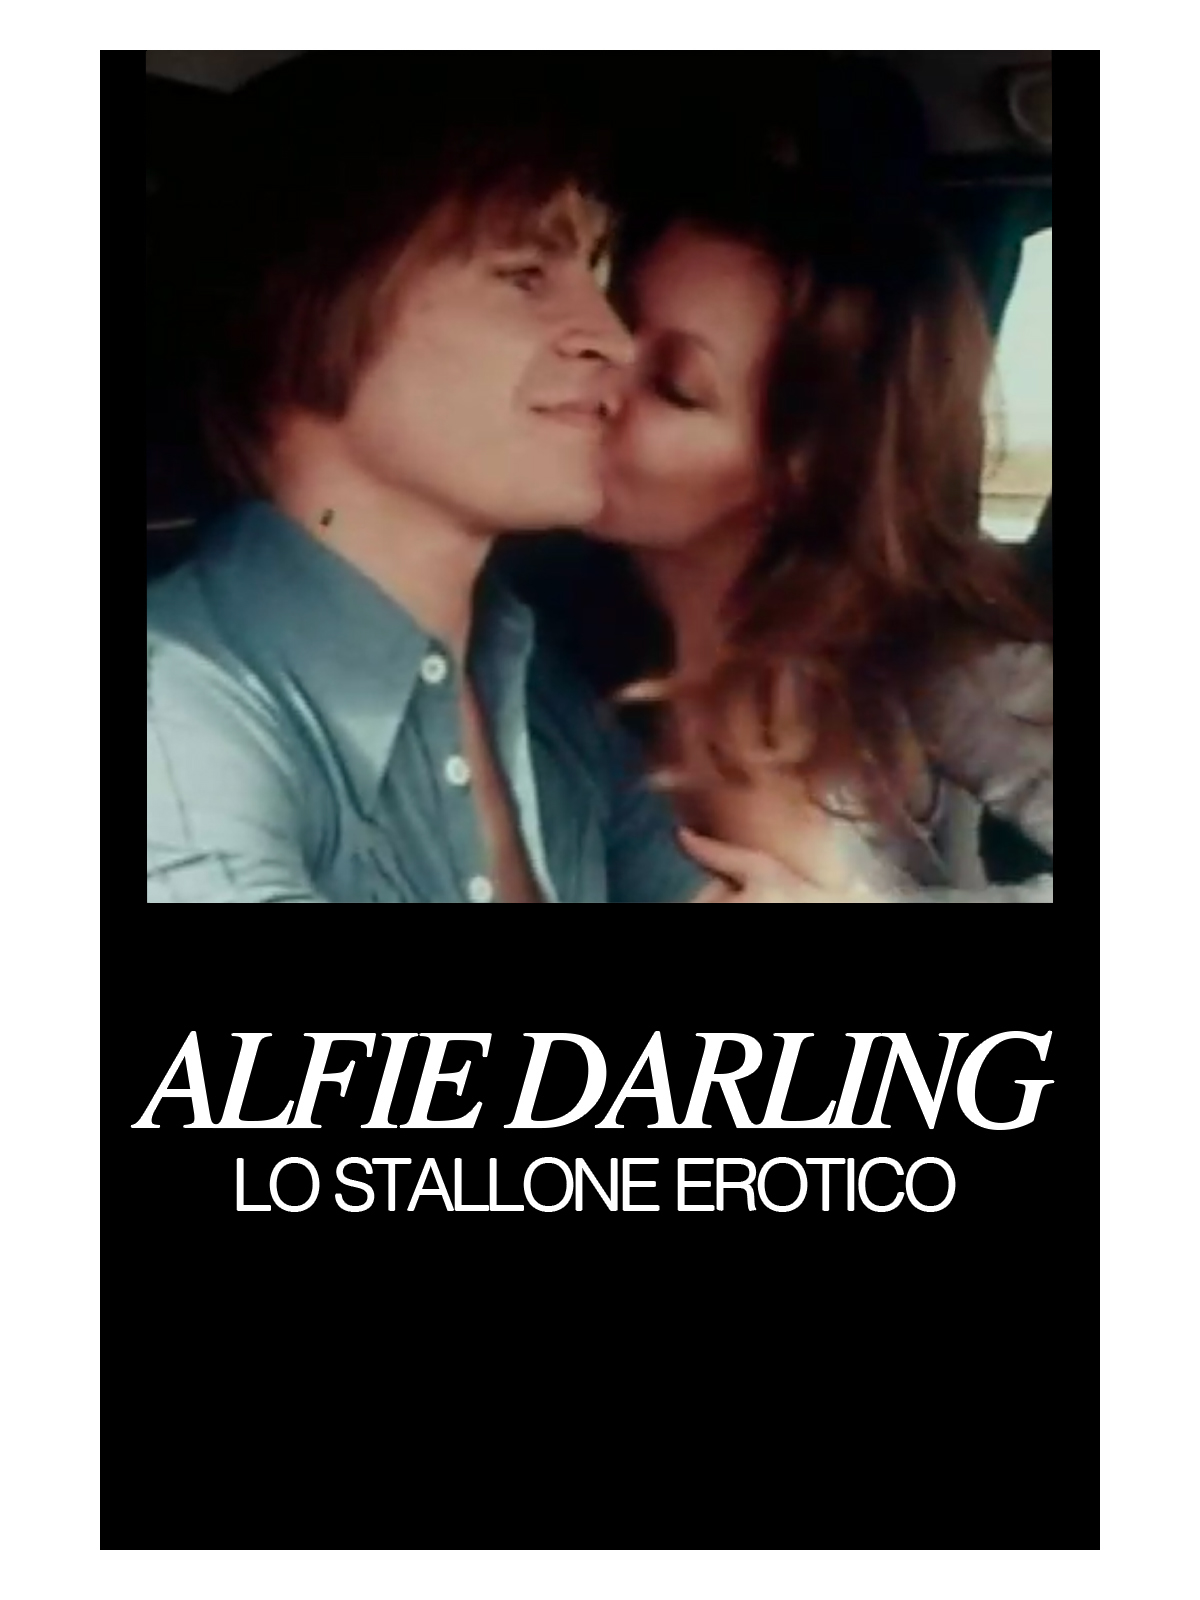 Alfie Darling lo stallone erotico